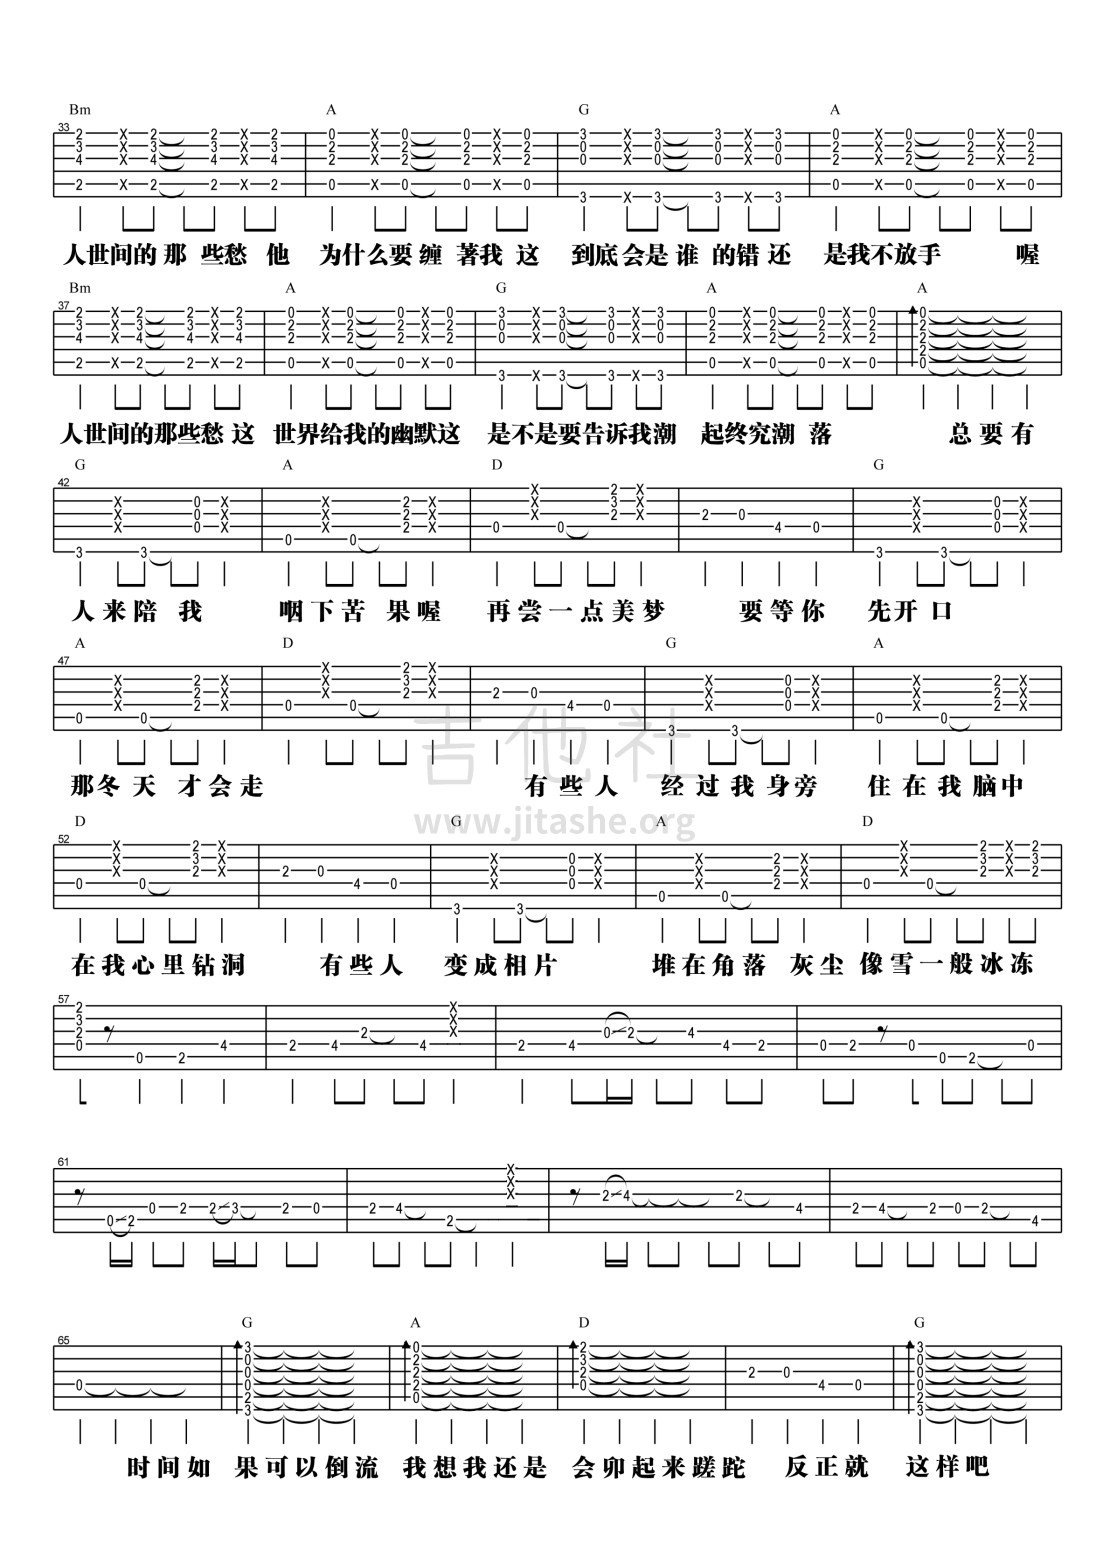 【阿信乐器】#23 五月天《一颗苹果》吉他教学吉他谱(图片谱,弹唱,教学)_五月天(Mayday)_2.jpg